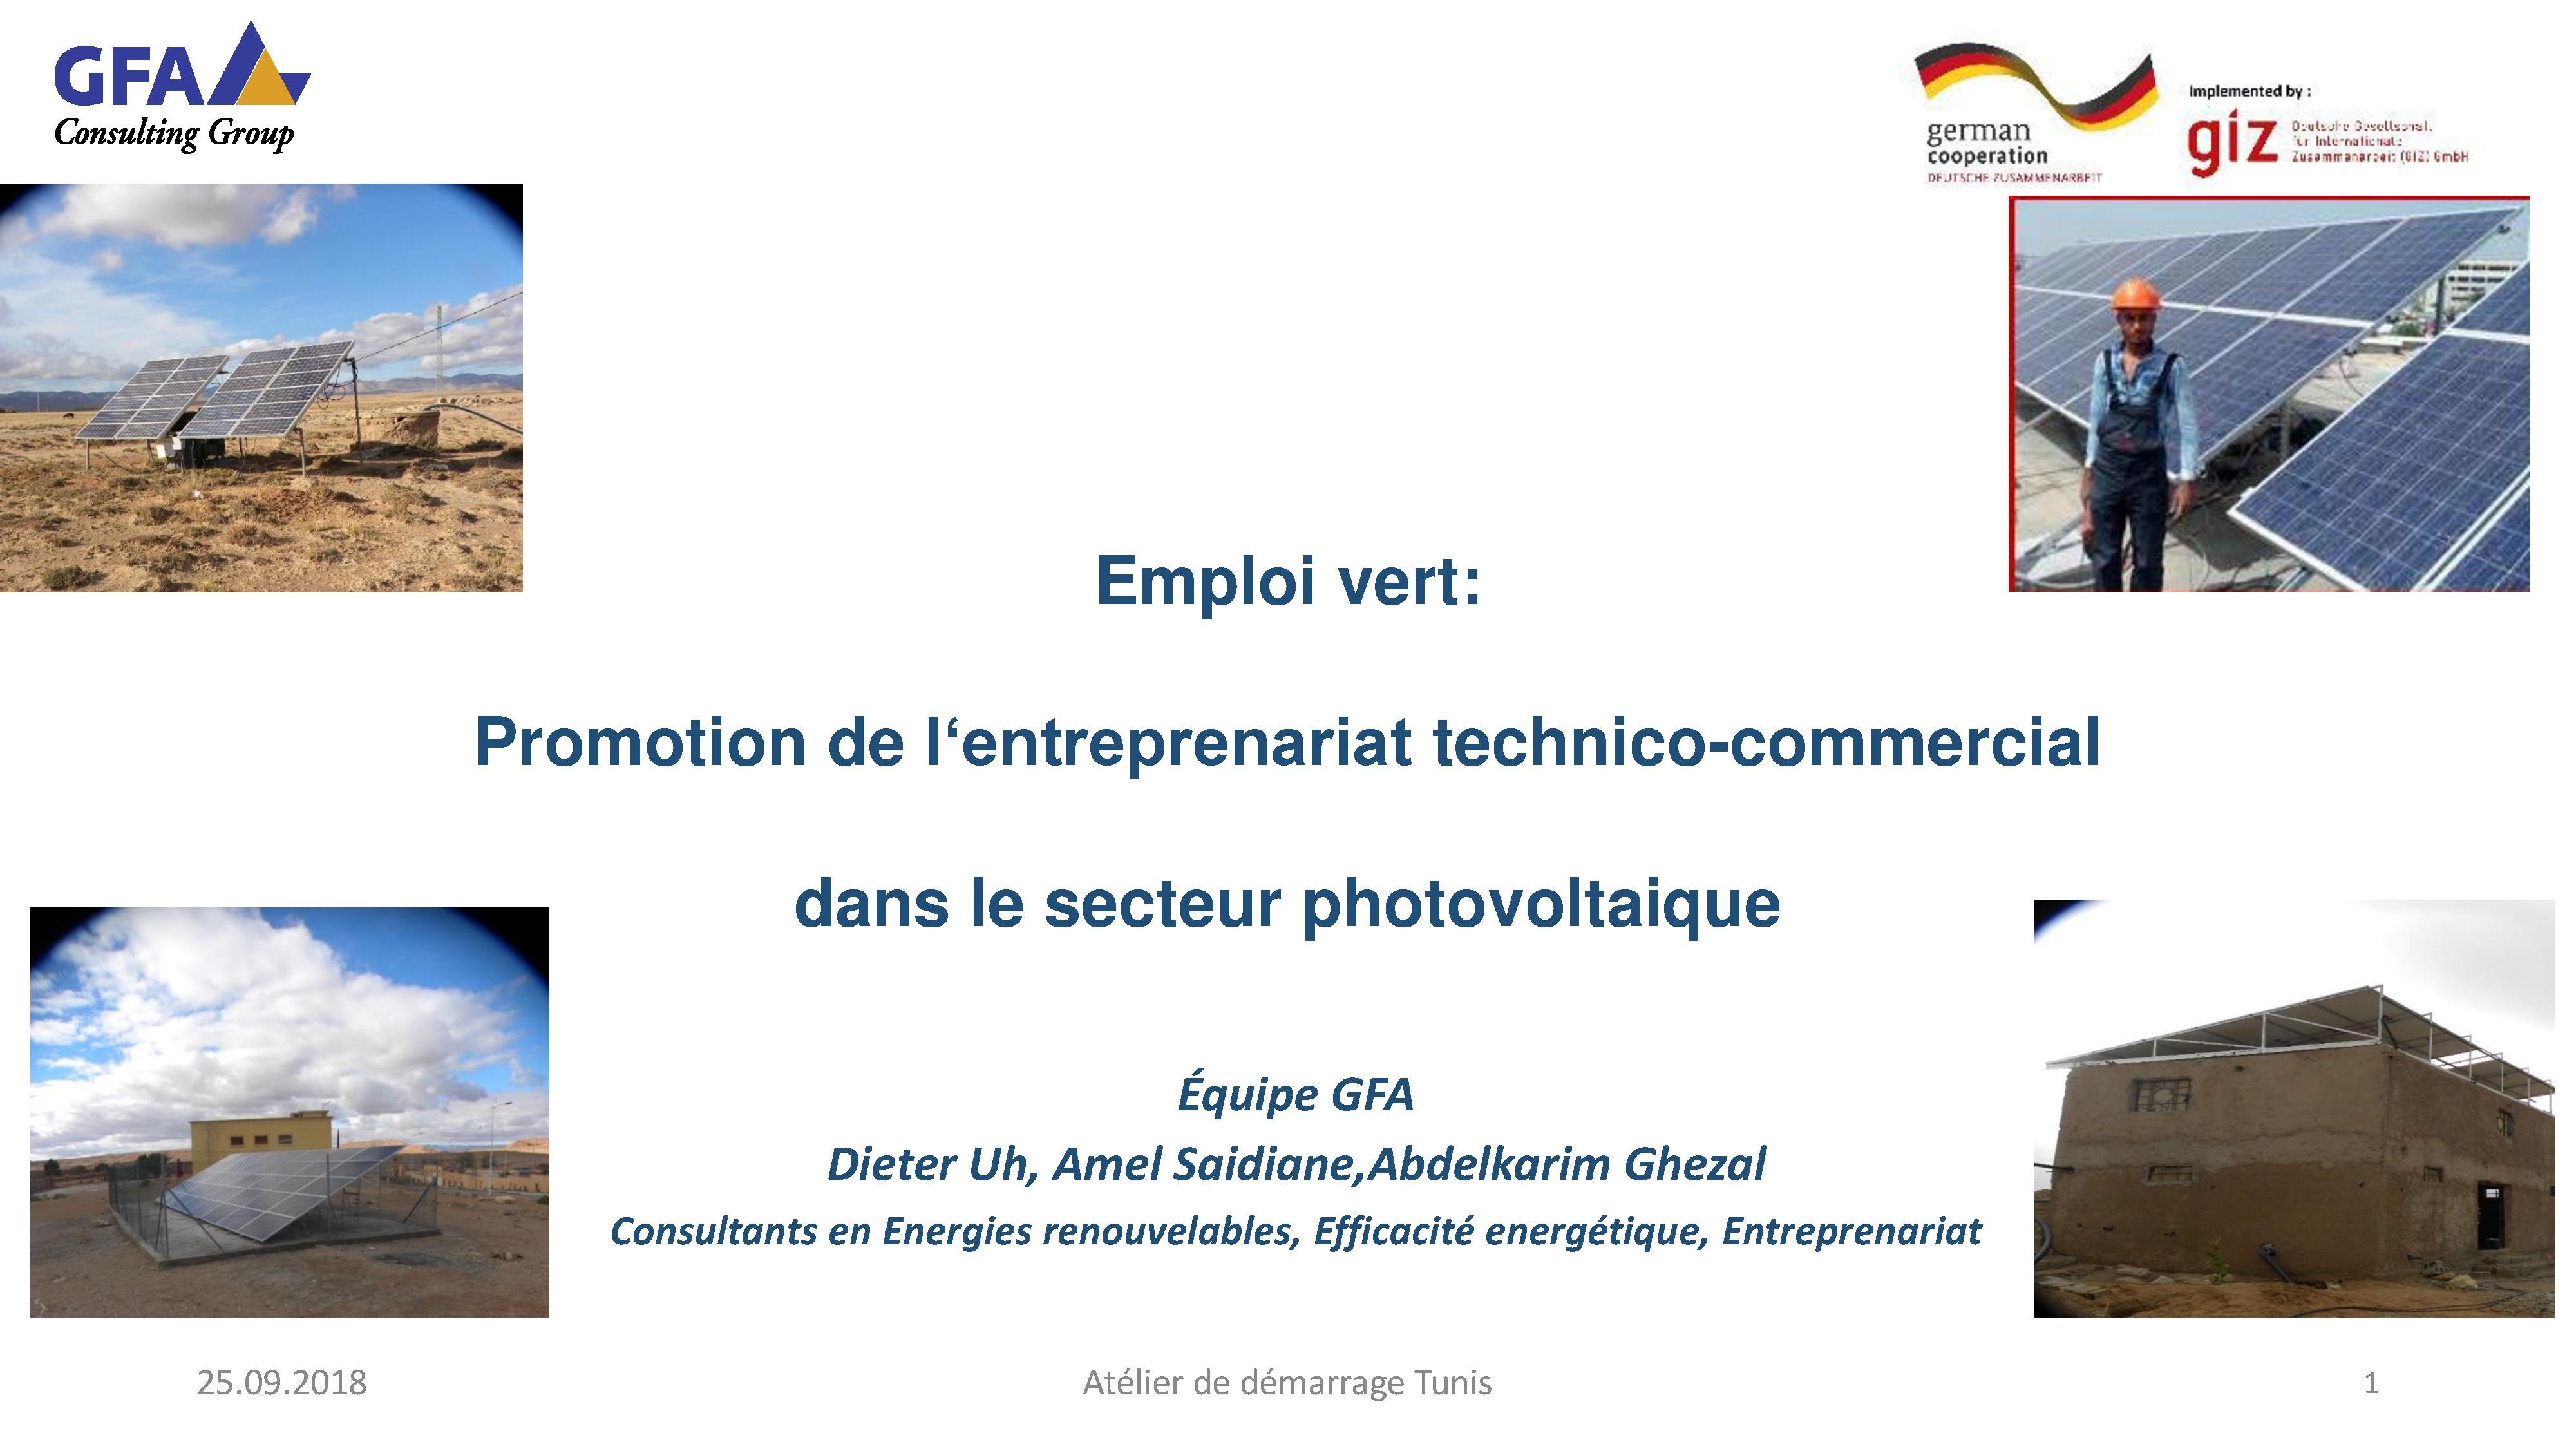 Emploi vert: Promotion de l‘entreprenariat technico-commercial dans le secteur photovoltaique